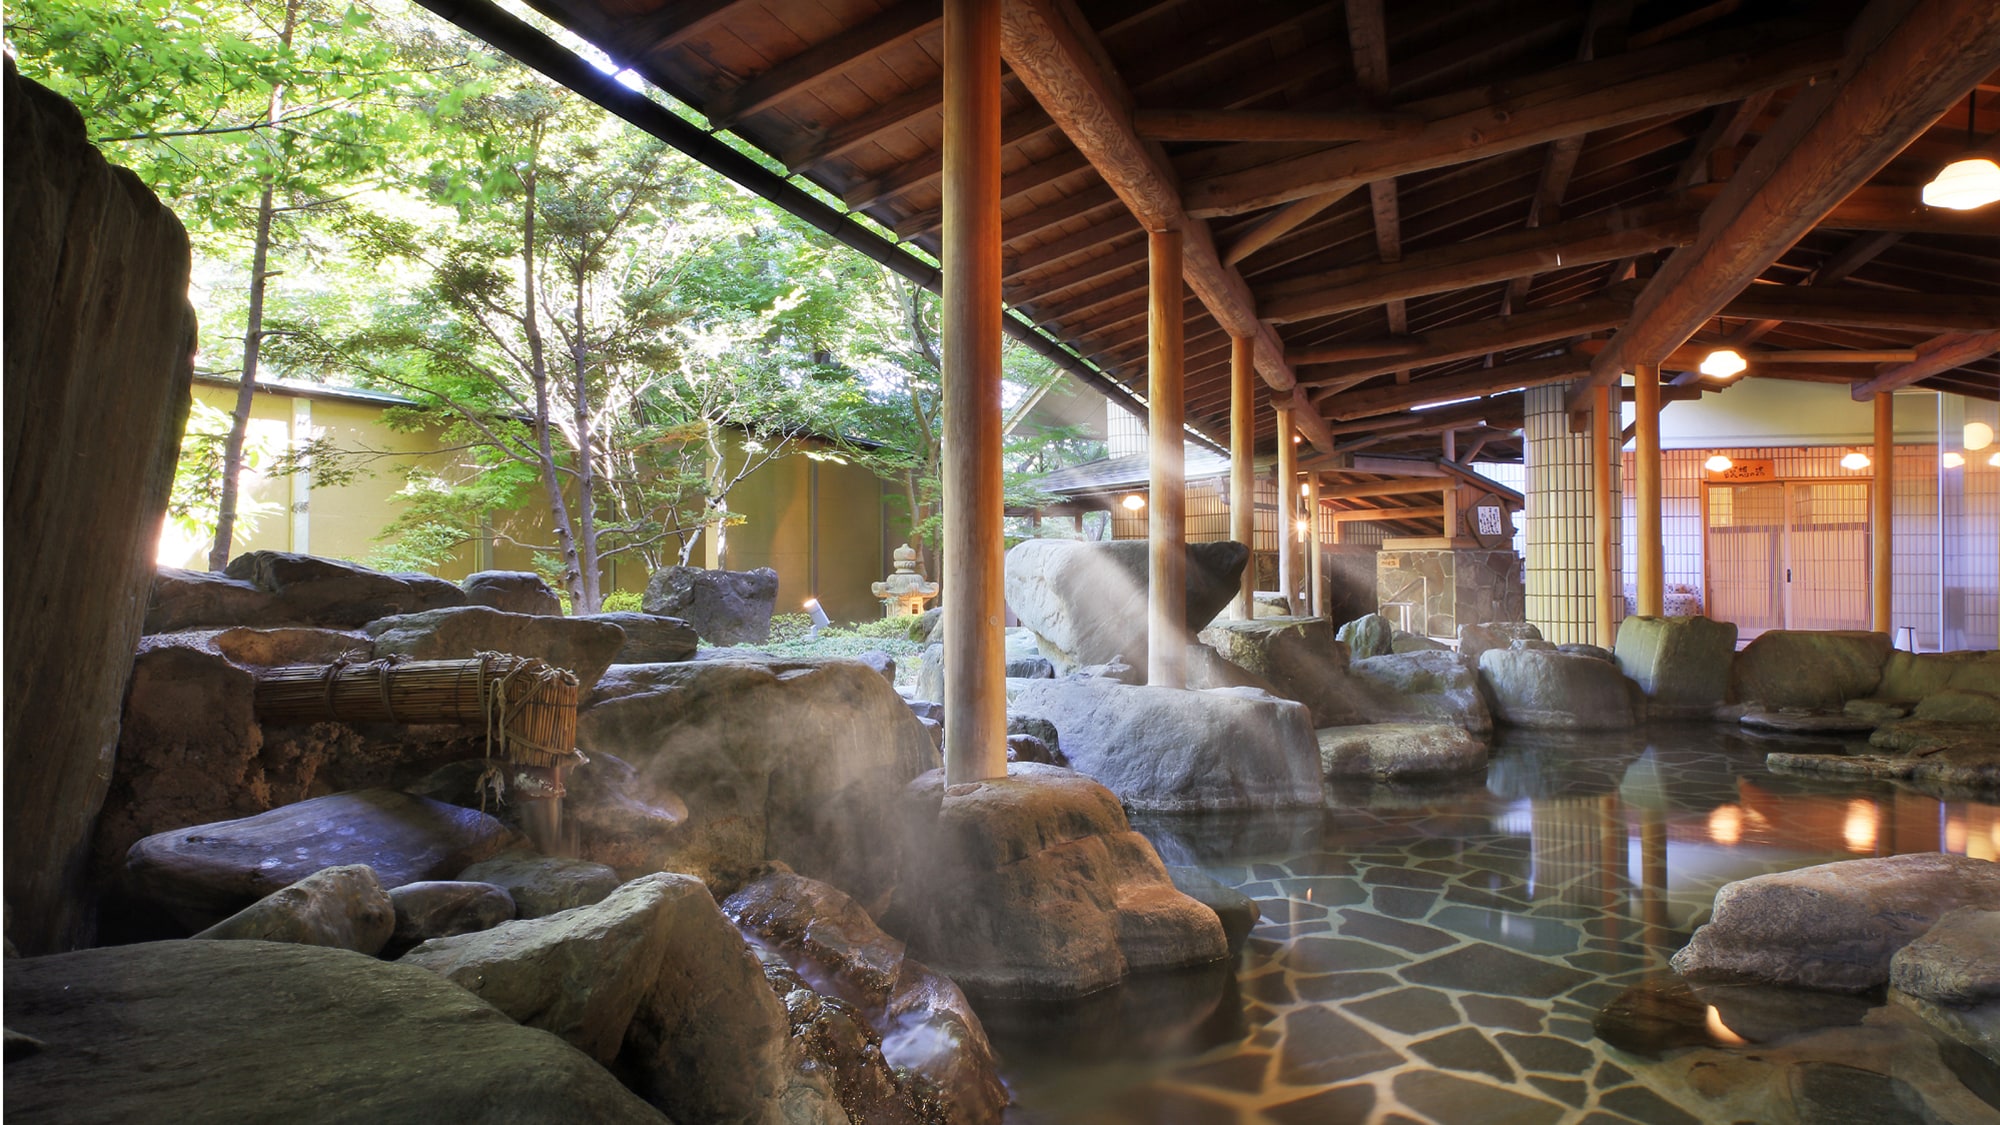 ◆ Garden open-air bath "Kawami no Yu"